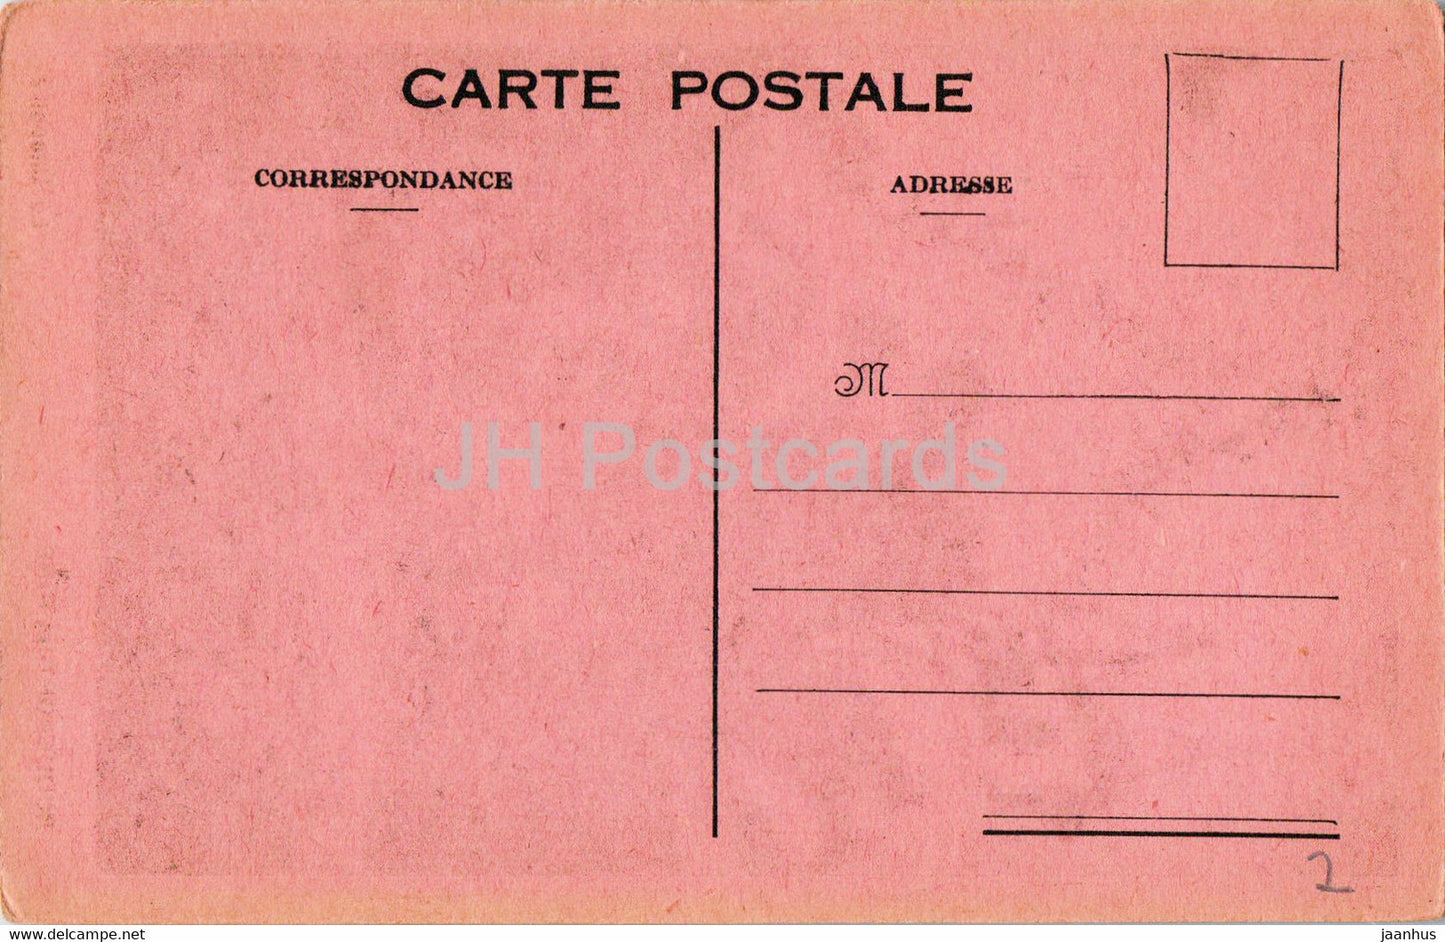 Roquefort les Pins - La Chapelle - chapelle - carte postale ancienne - France - inutilisée